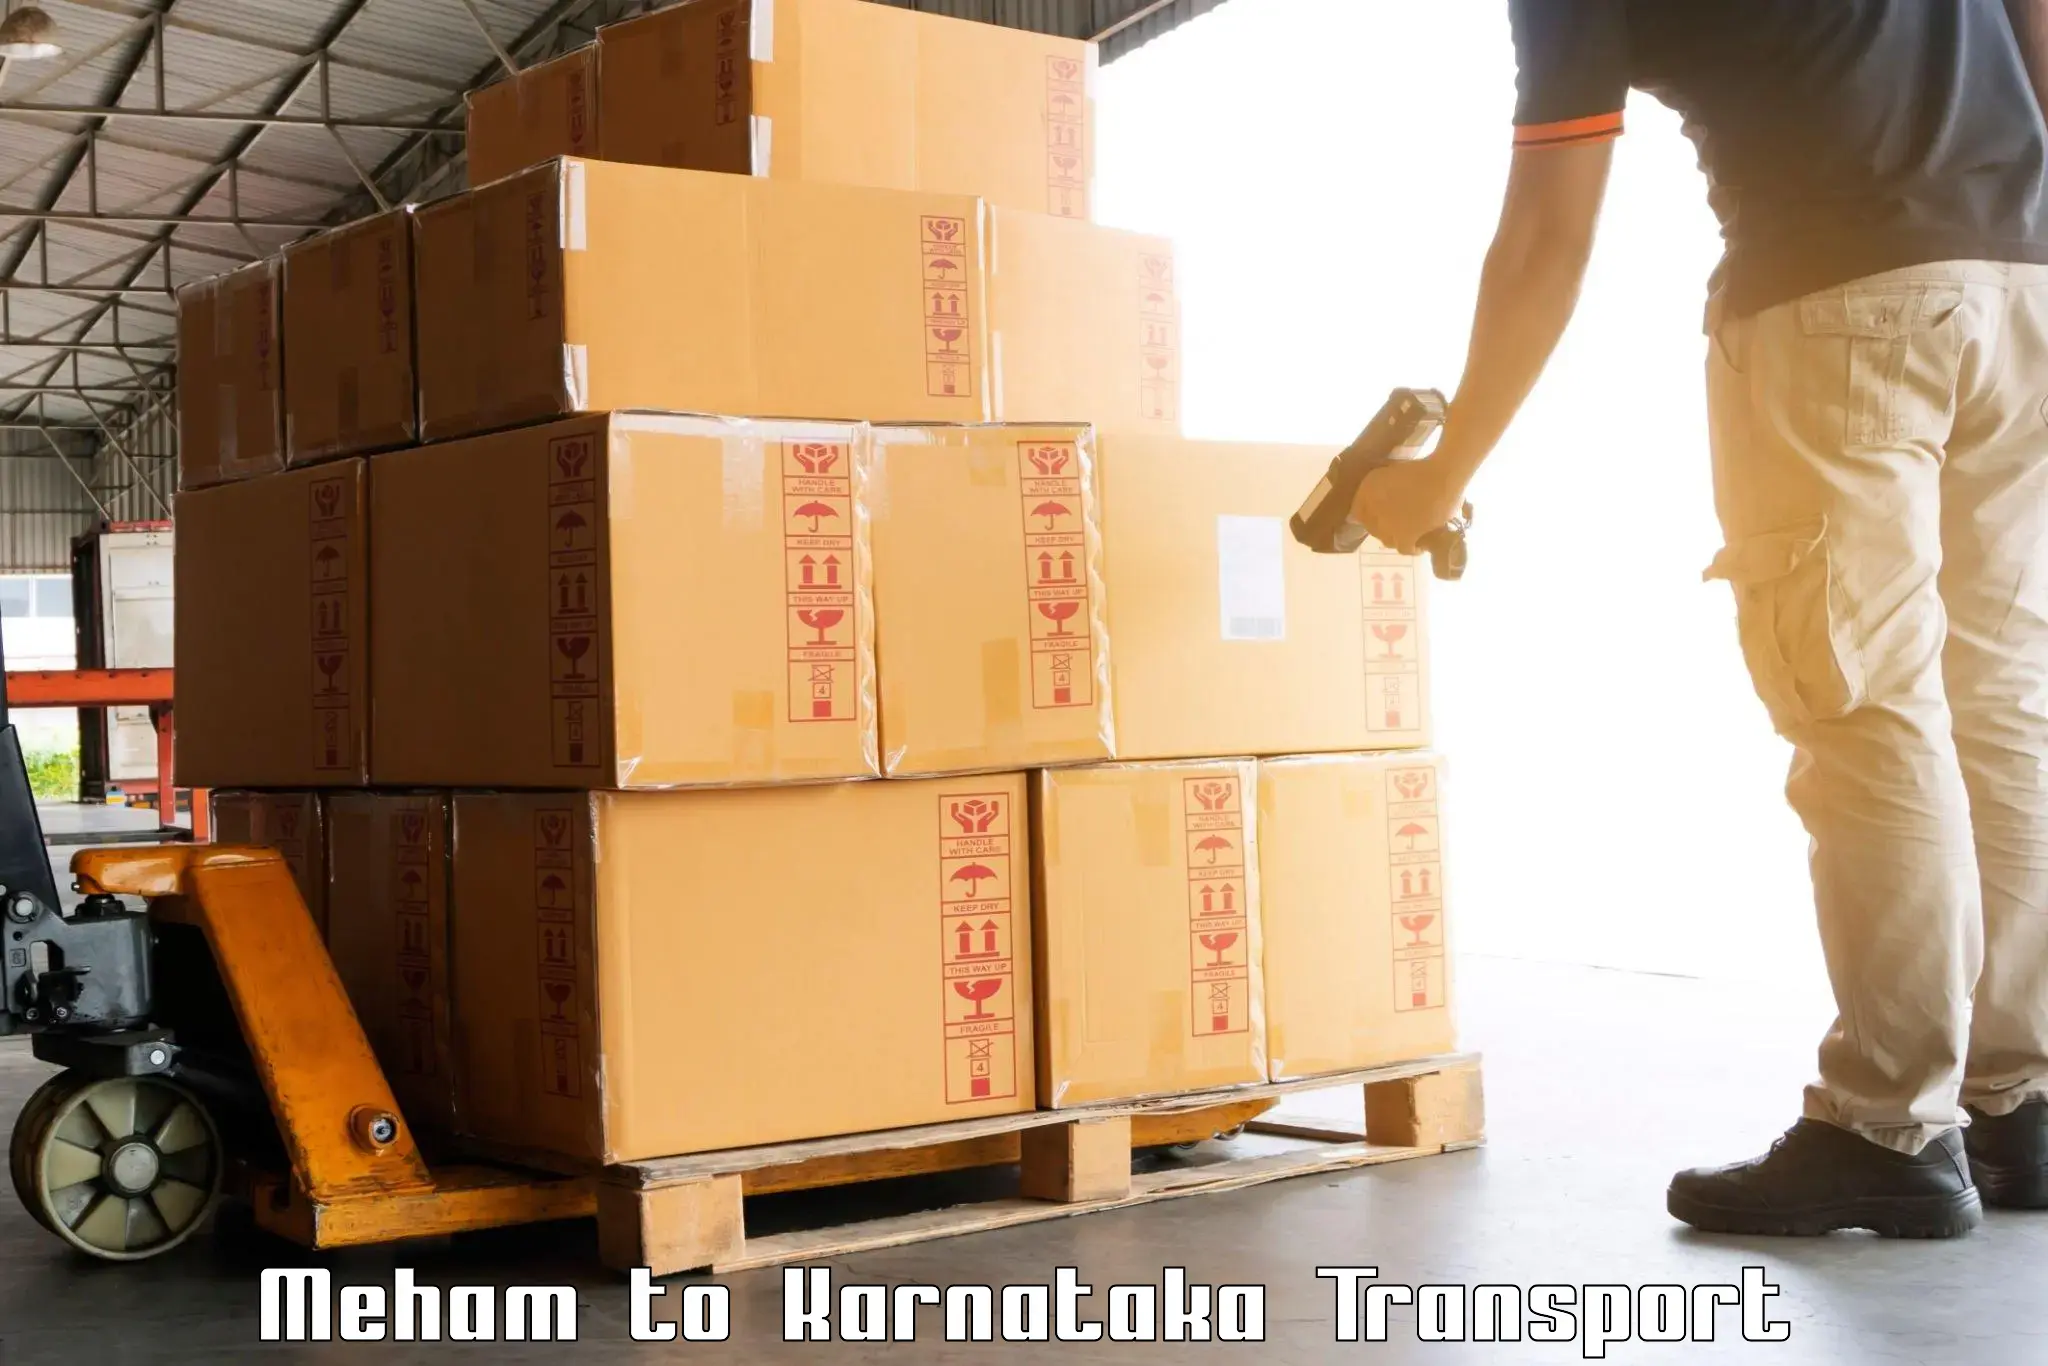 Material transport services Meham to Deodurga